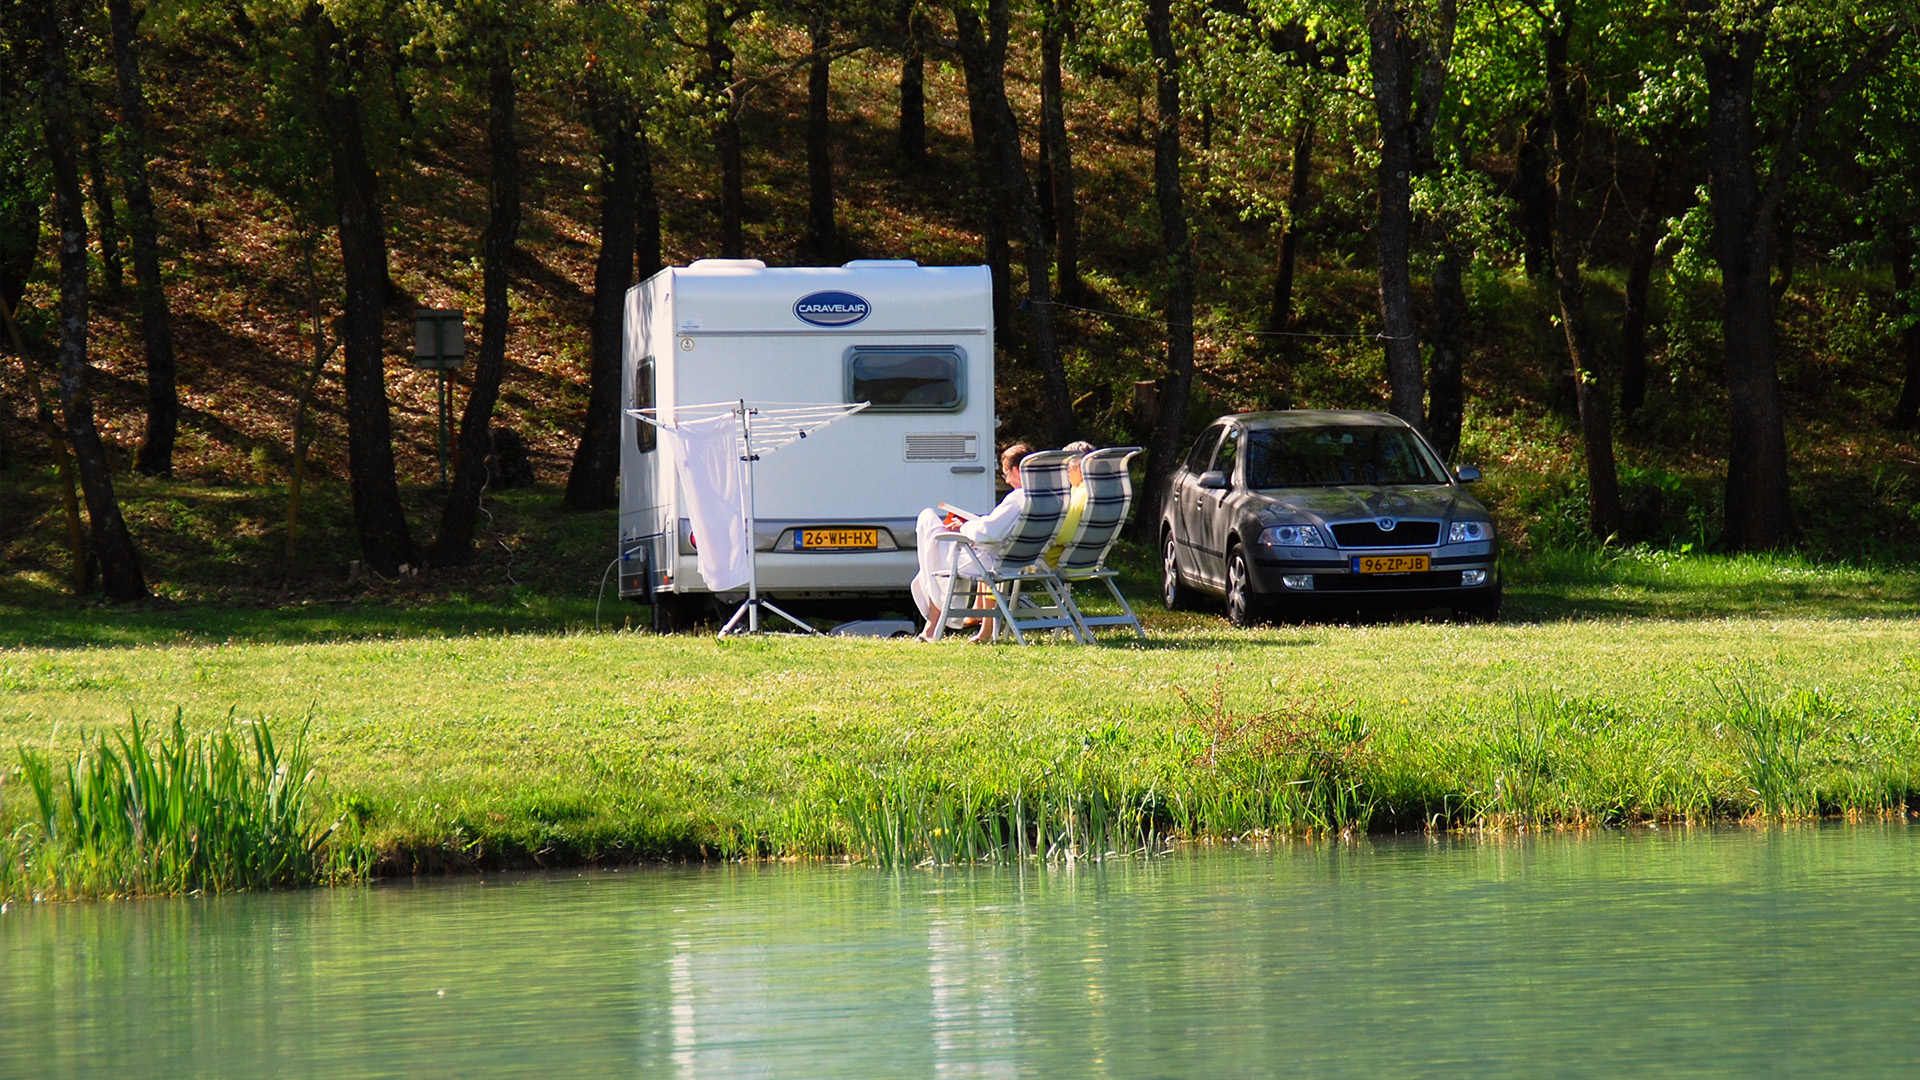 Campingplatz am See, Zelt, Wohnwagen oder Wohnmobil